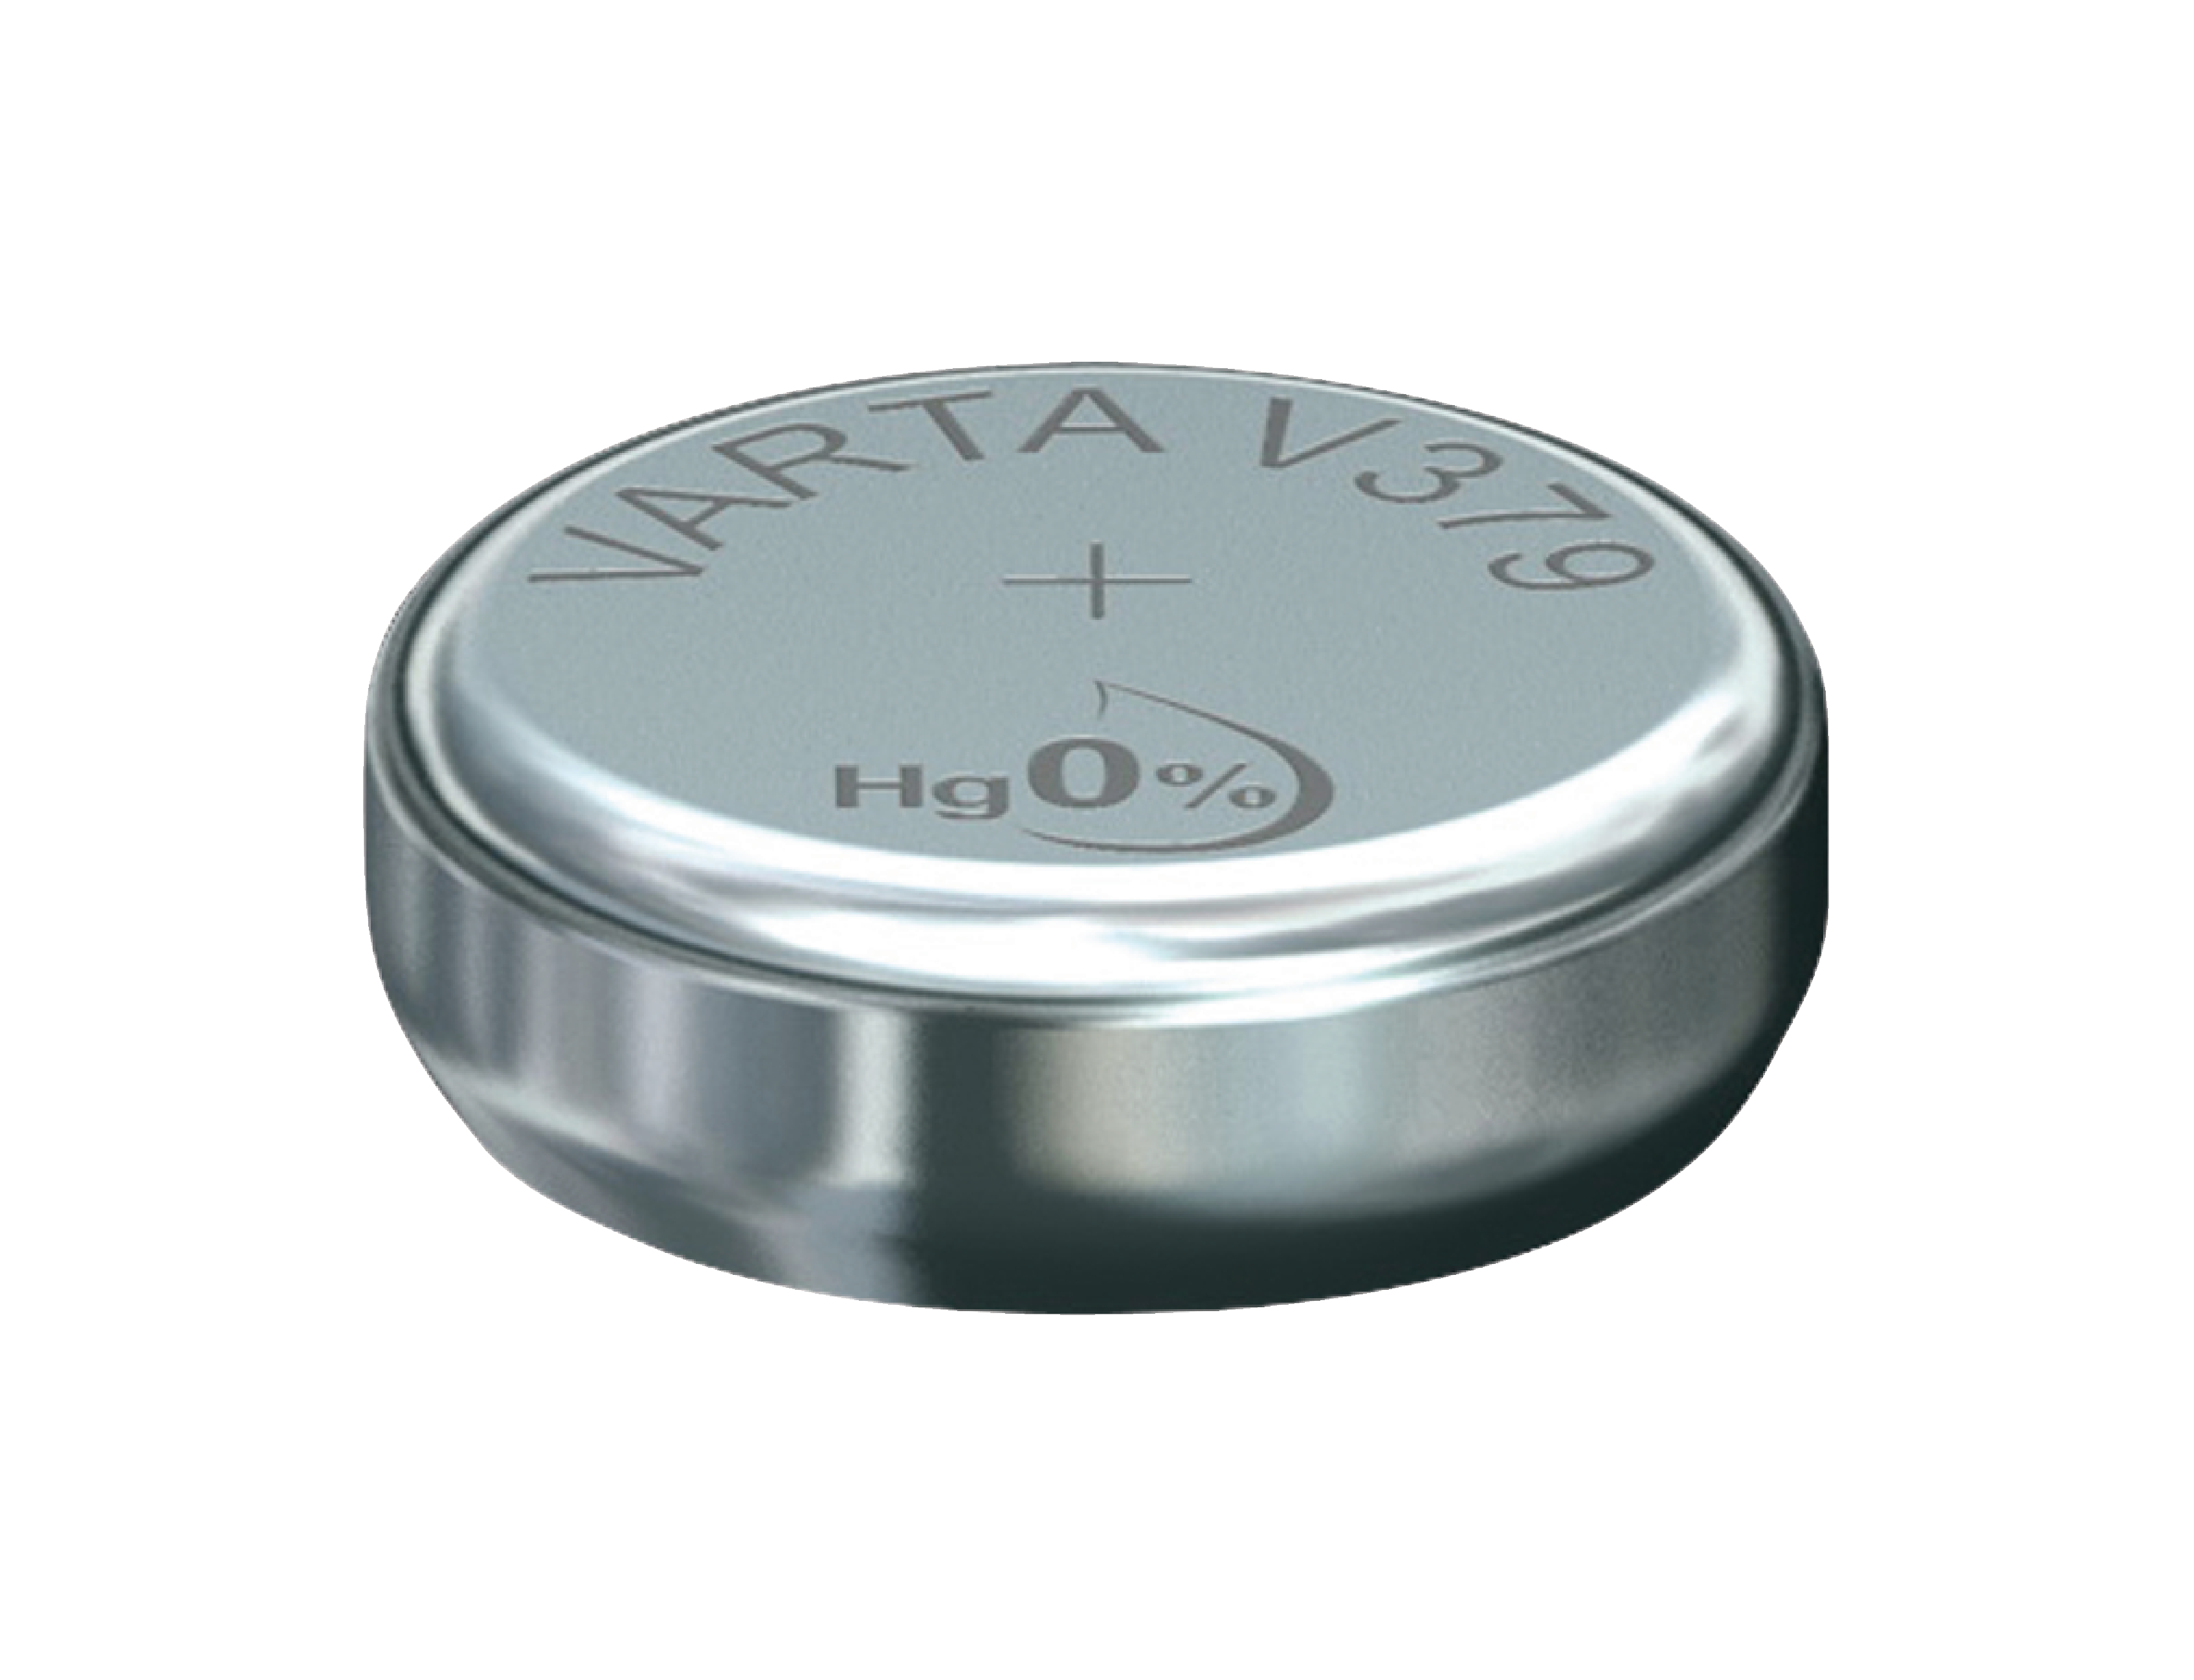 Stříbro-oxidová hodinková baterie SR63/V379 1.55 V 14 mAh, VARTA-V379